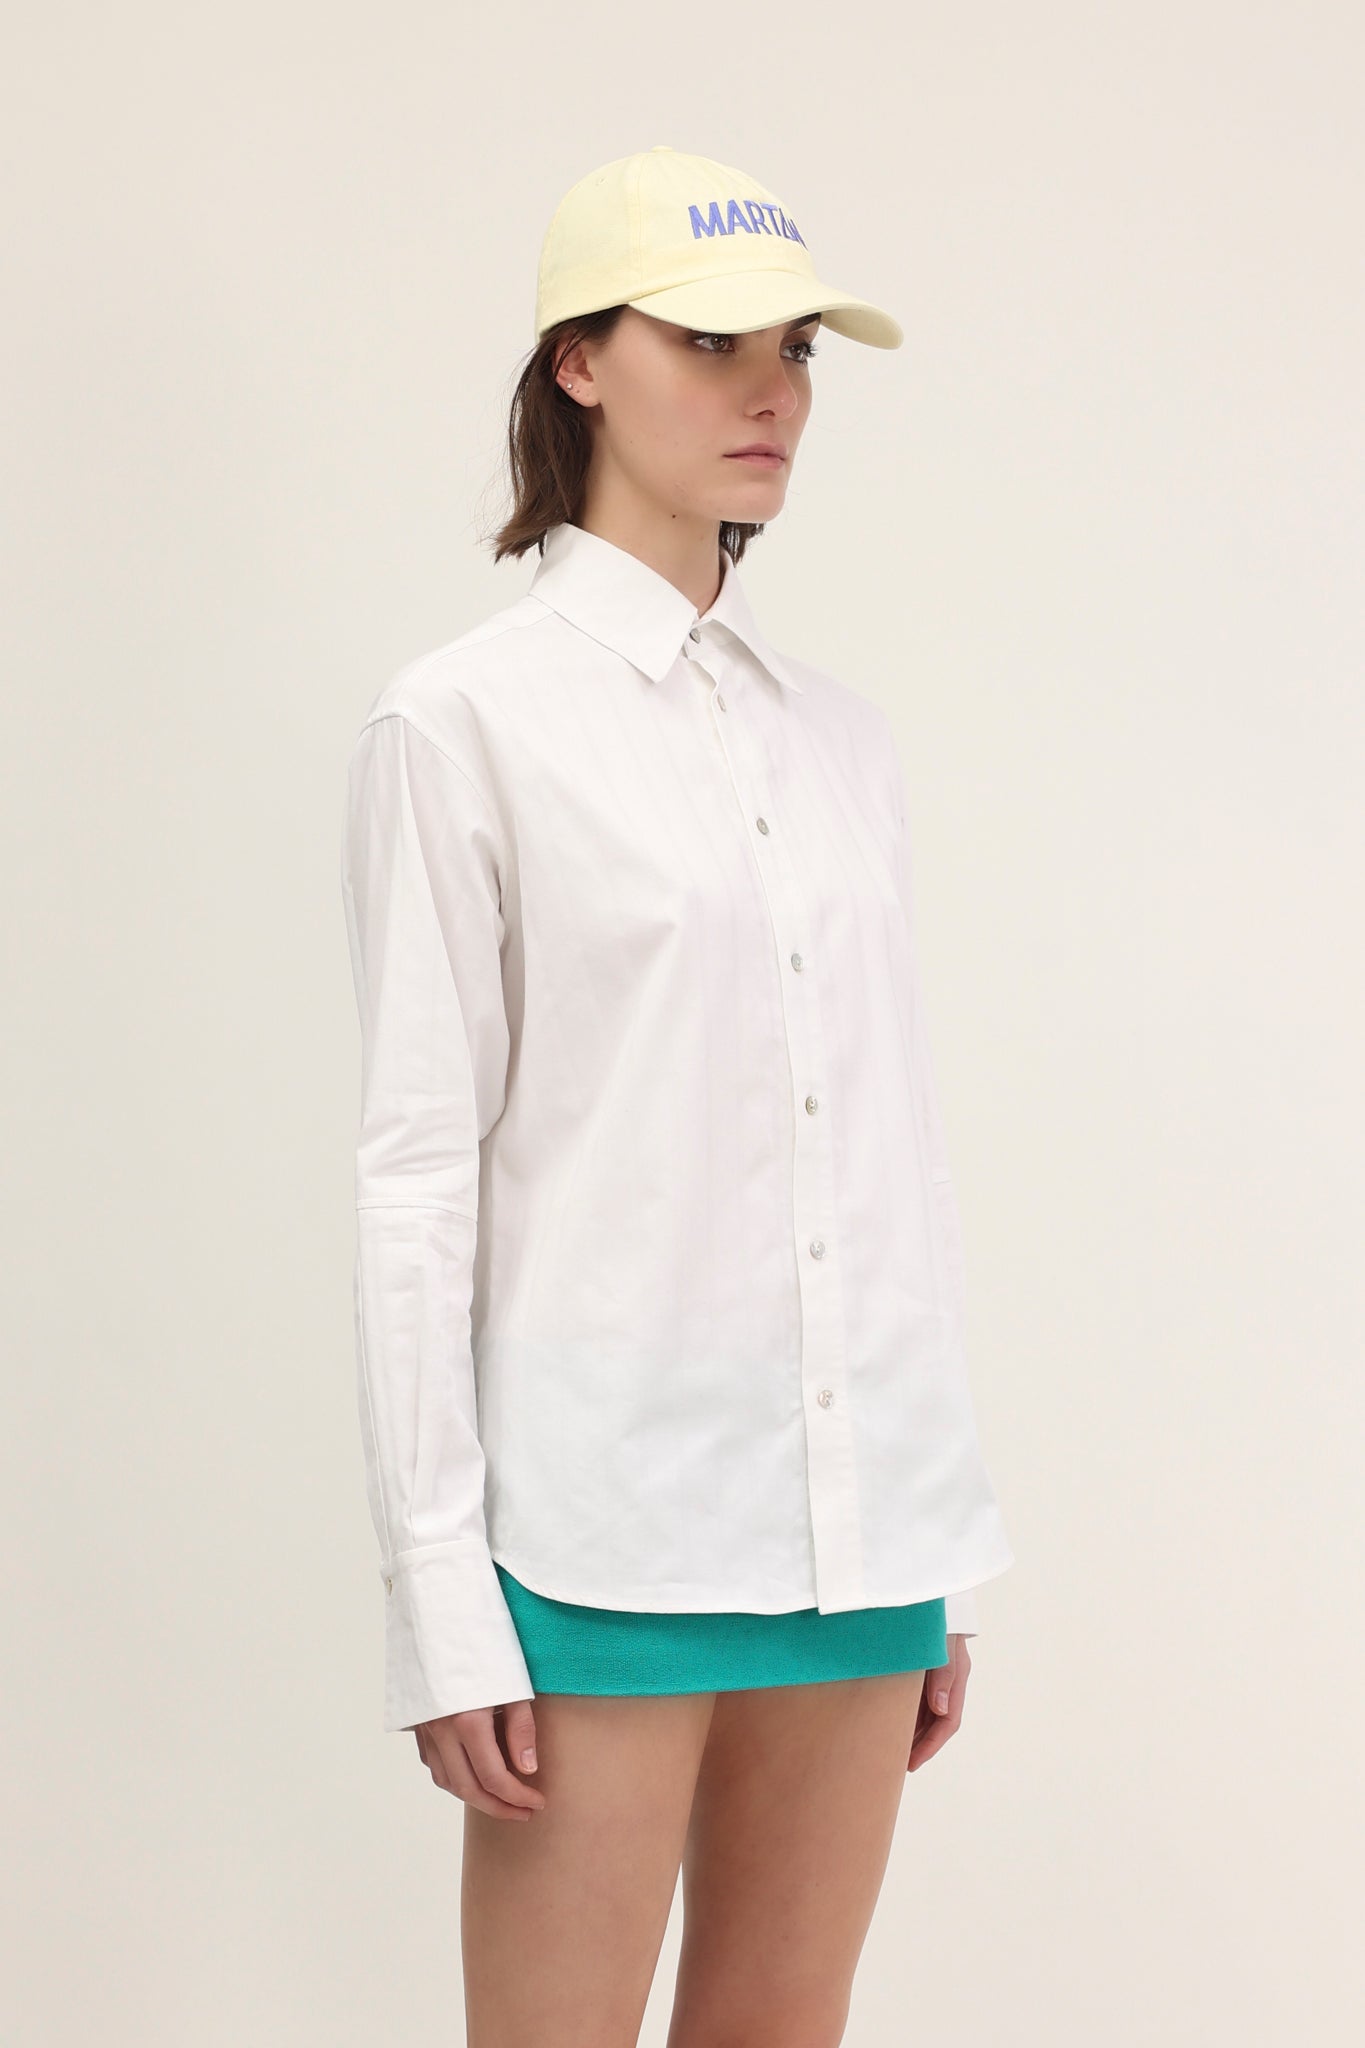 Marchi Shirt White